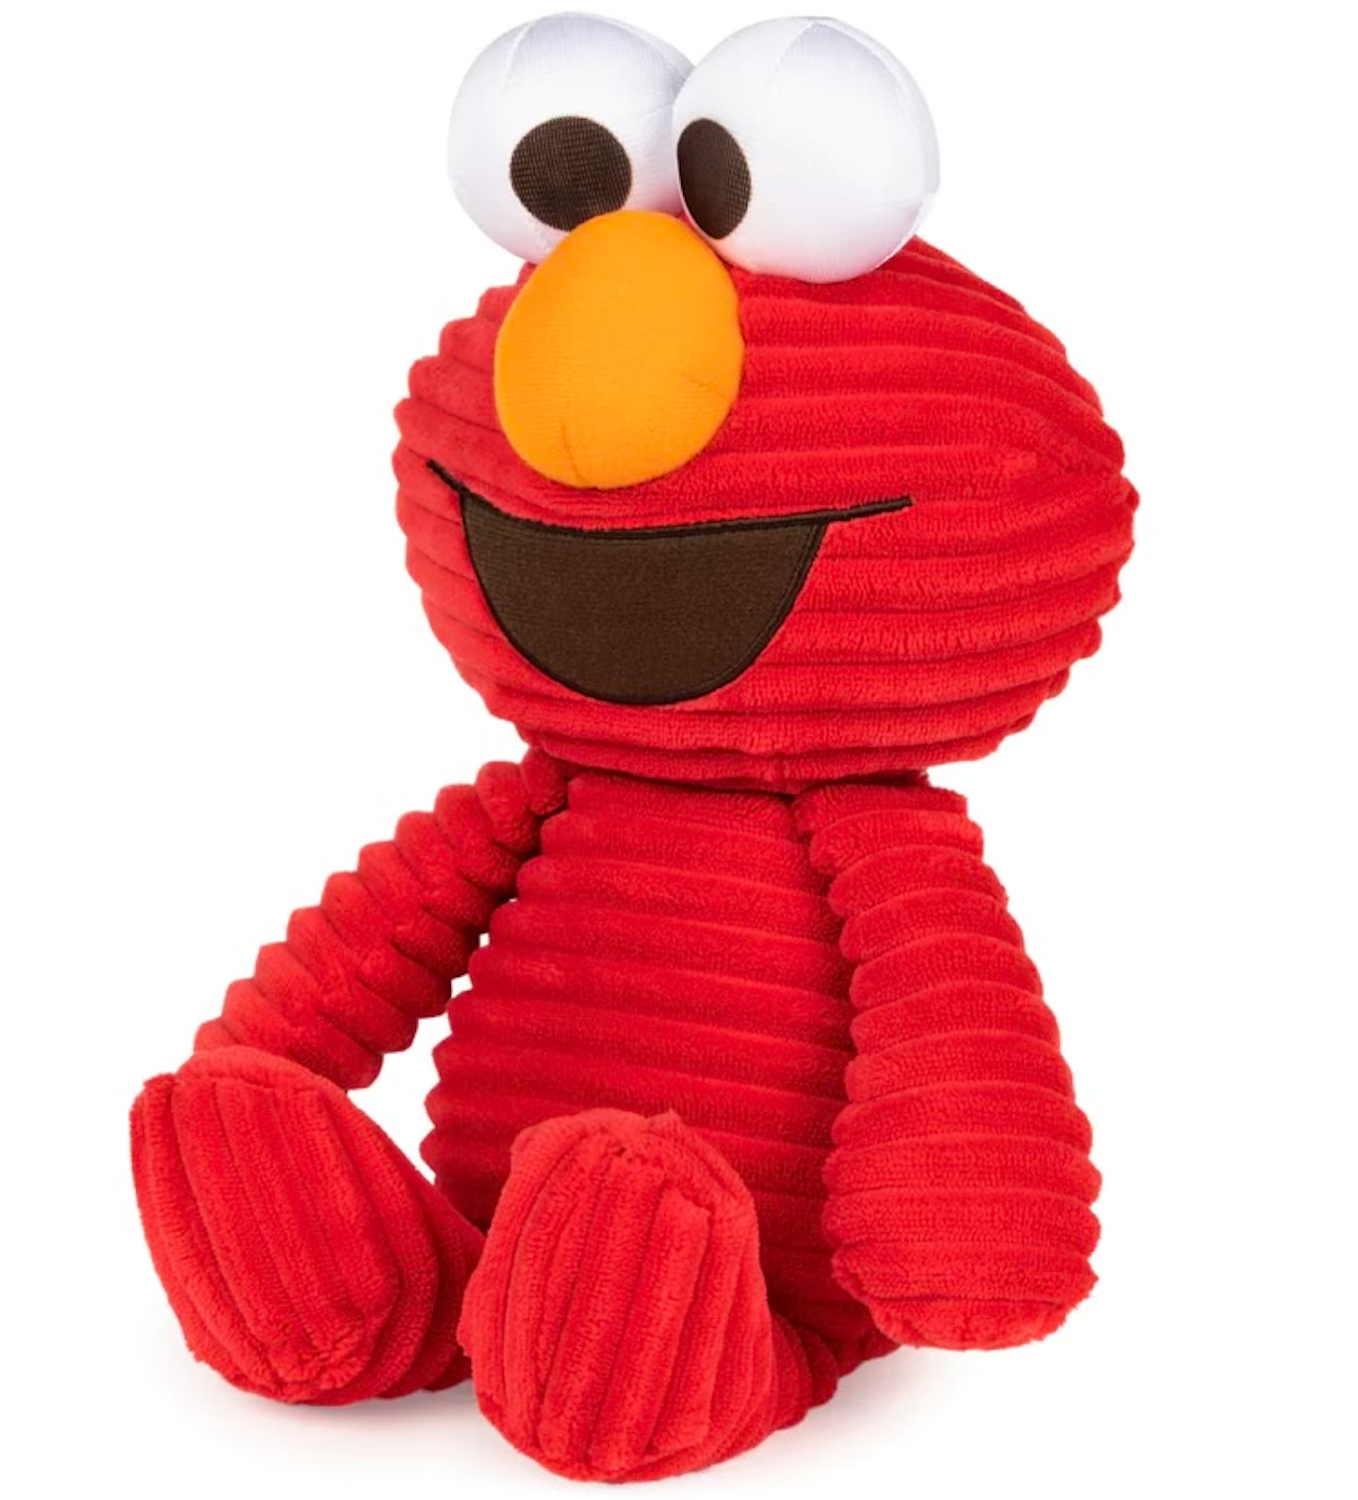 Cuddly Elmo